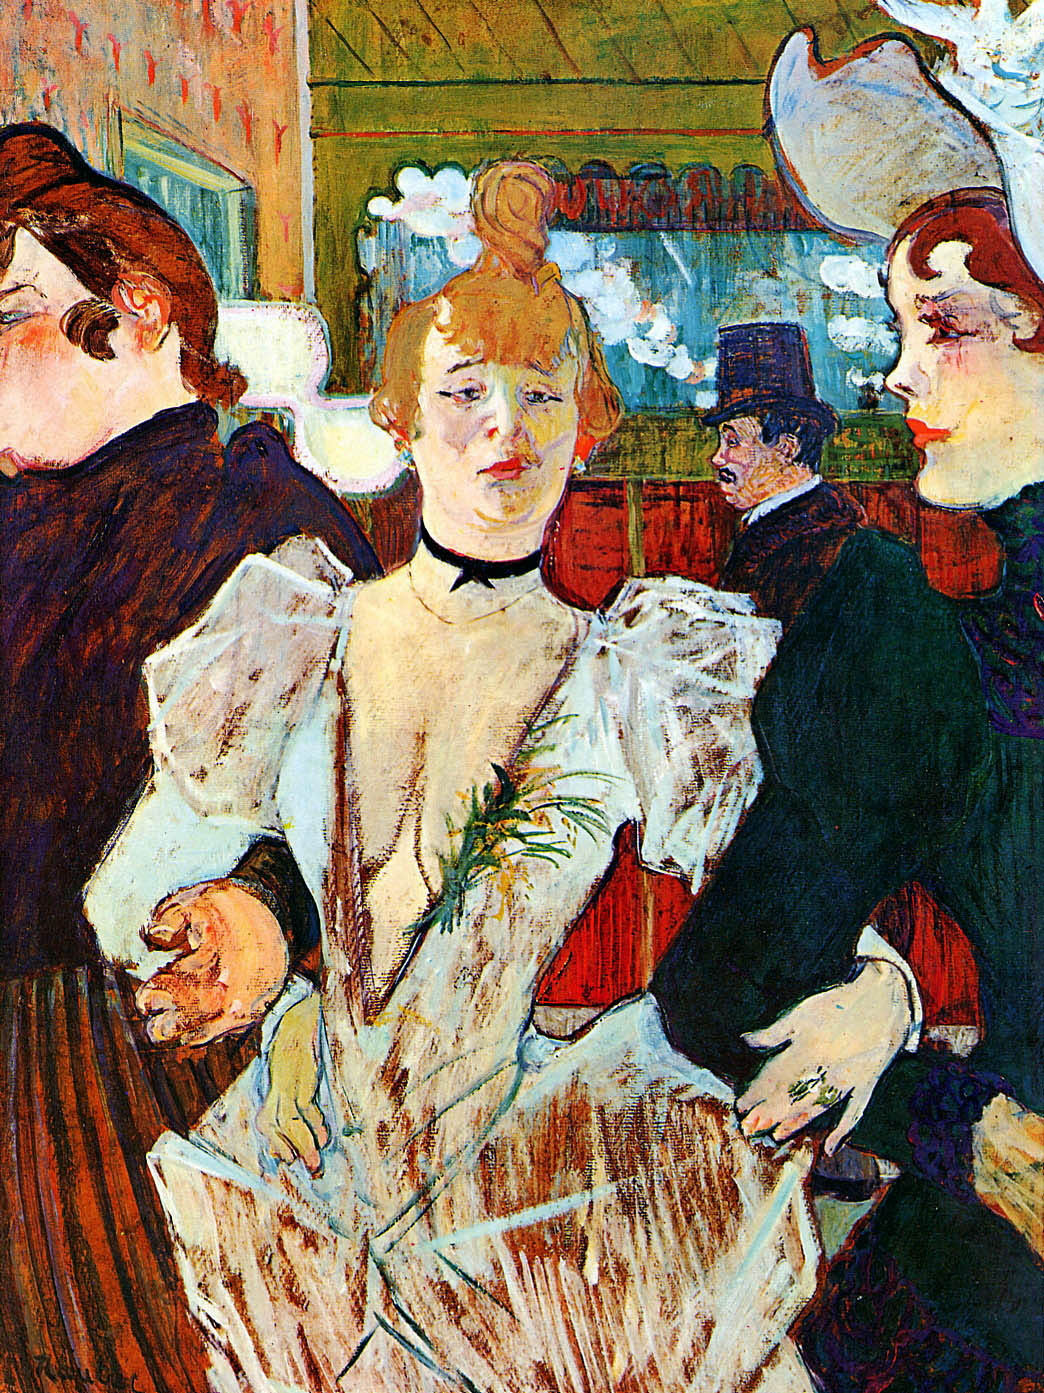 Анри де Тулуз-Лотрек. Ла Гулю, входящая в "Мулен Руж" с двумя женщинами. 1892.